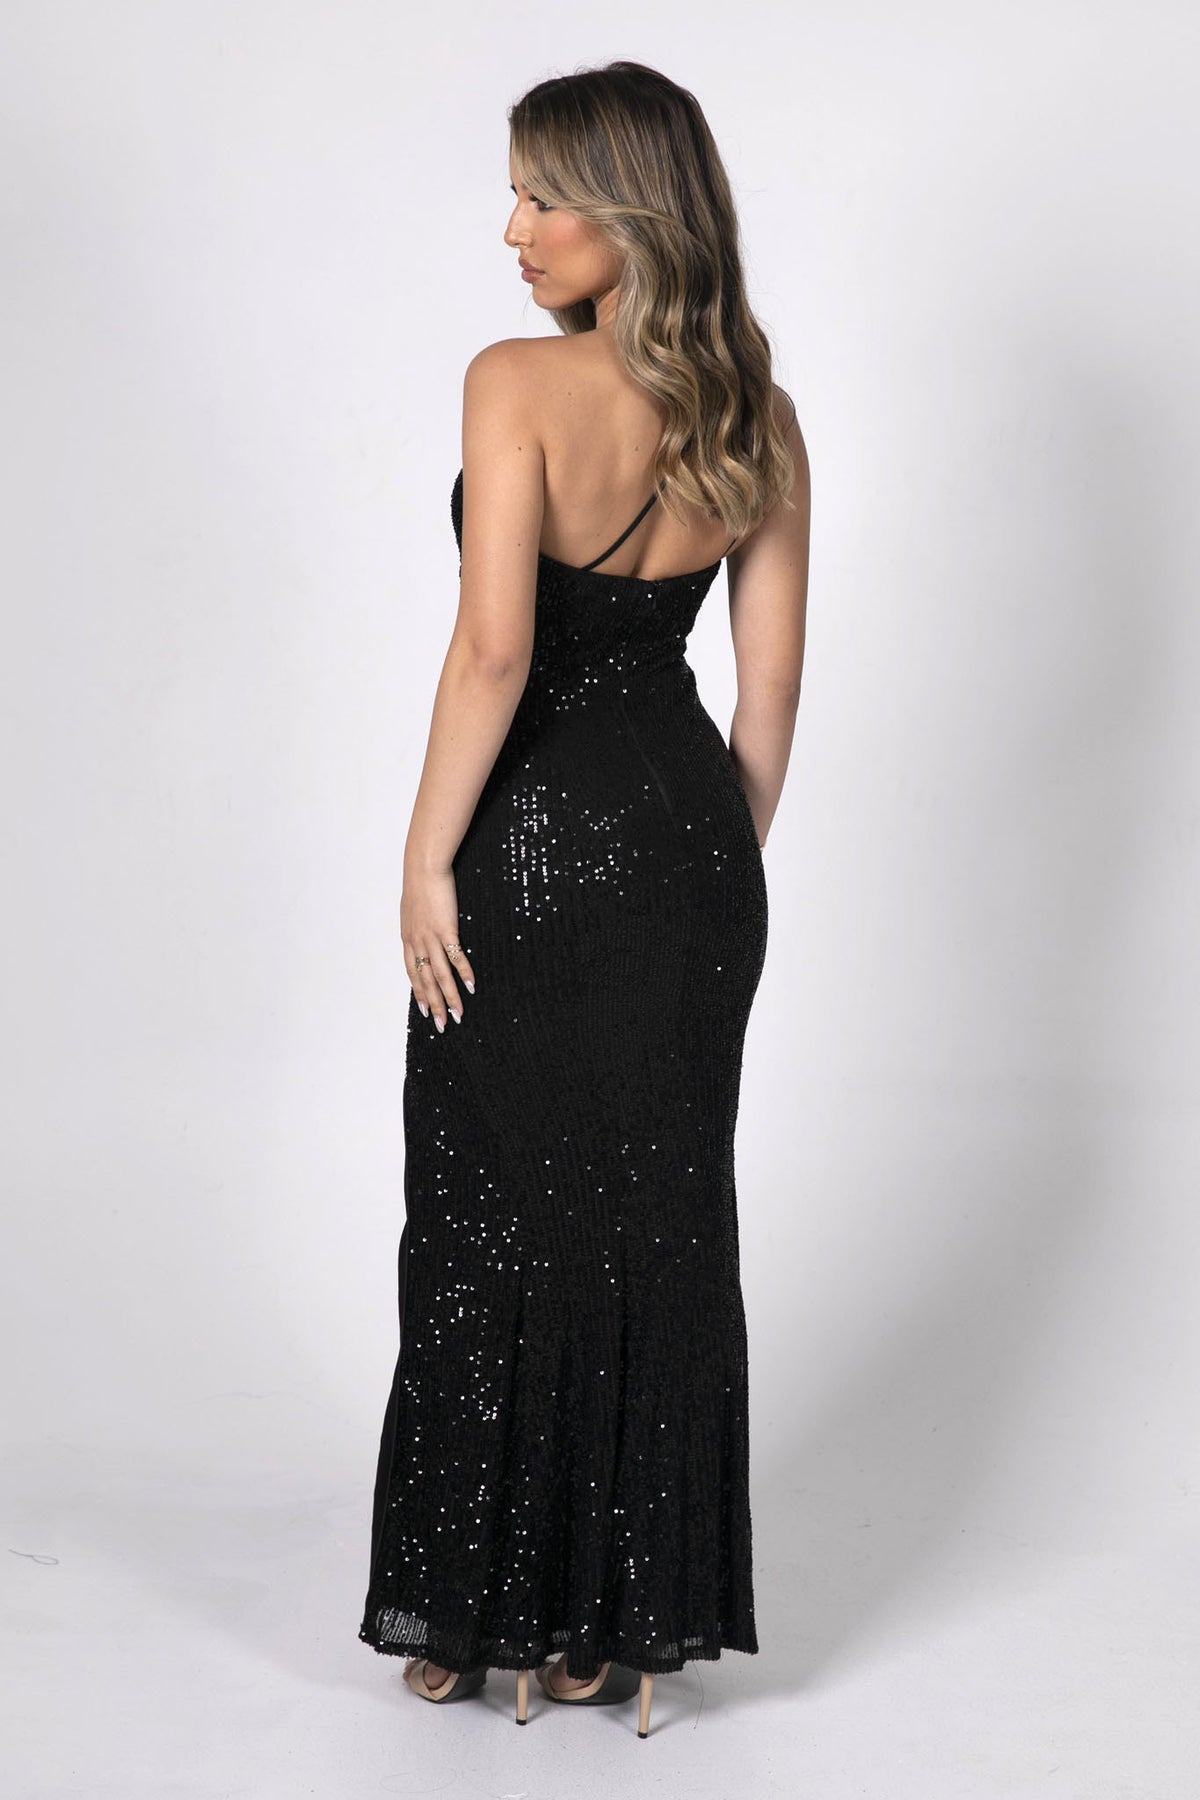 CALI Sequin Maxi Dress - Black – Noodz Boutique